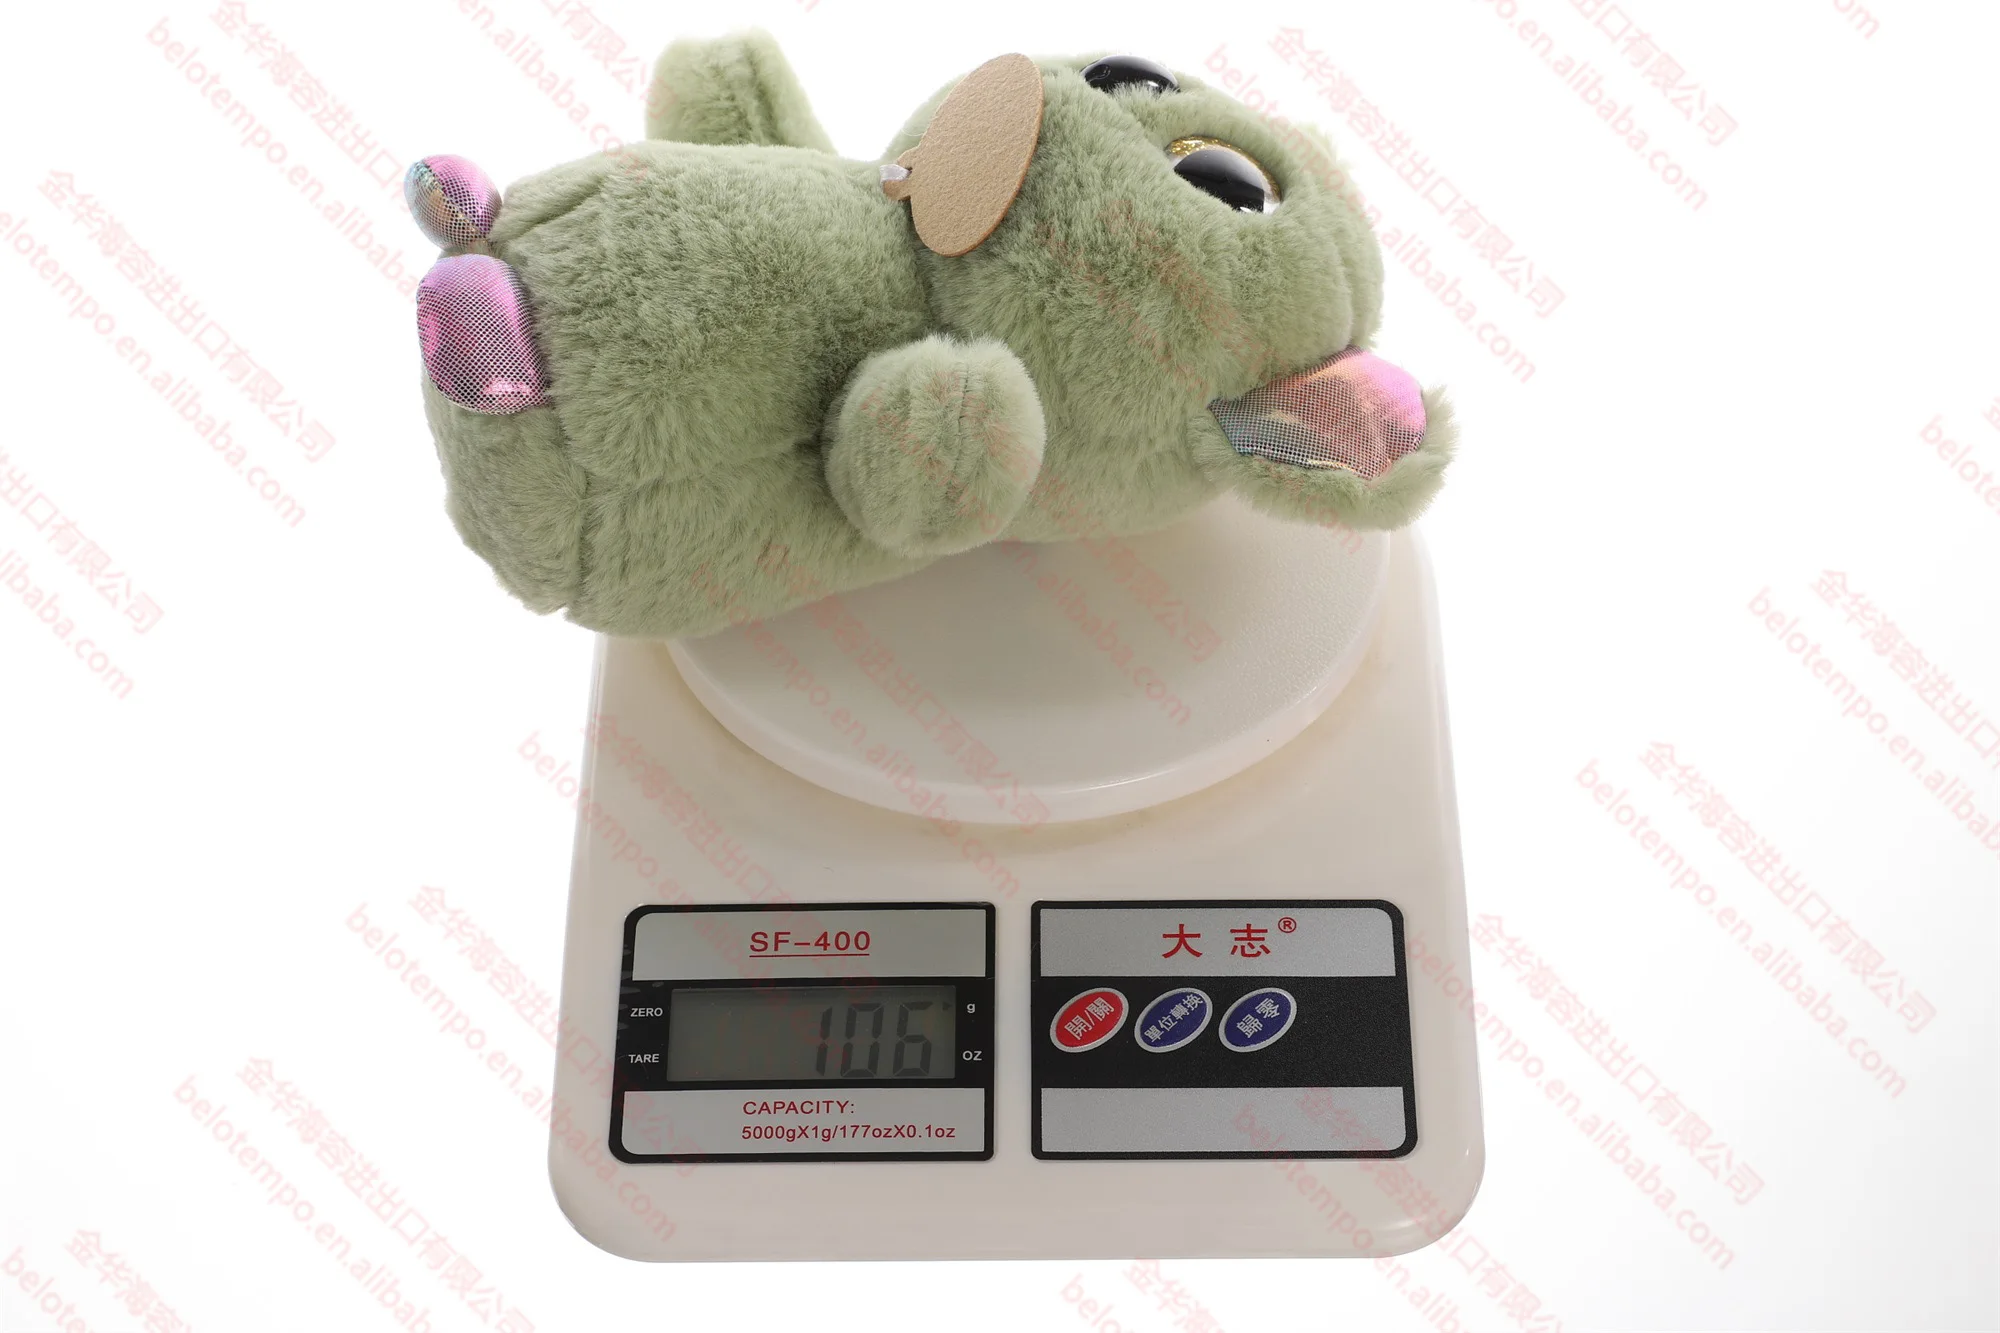 Wholesale CPC hot selling custom plush mouse toys Korean OEM/ODM logo stuffed animal plush soft toys crane mouse custom plush